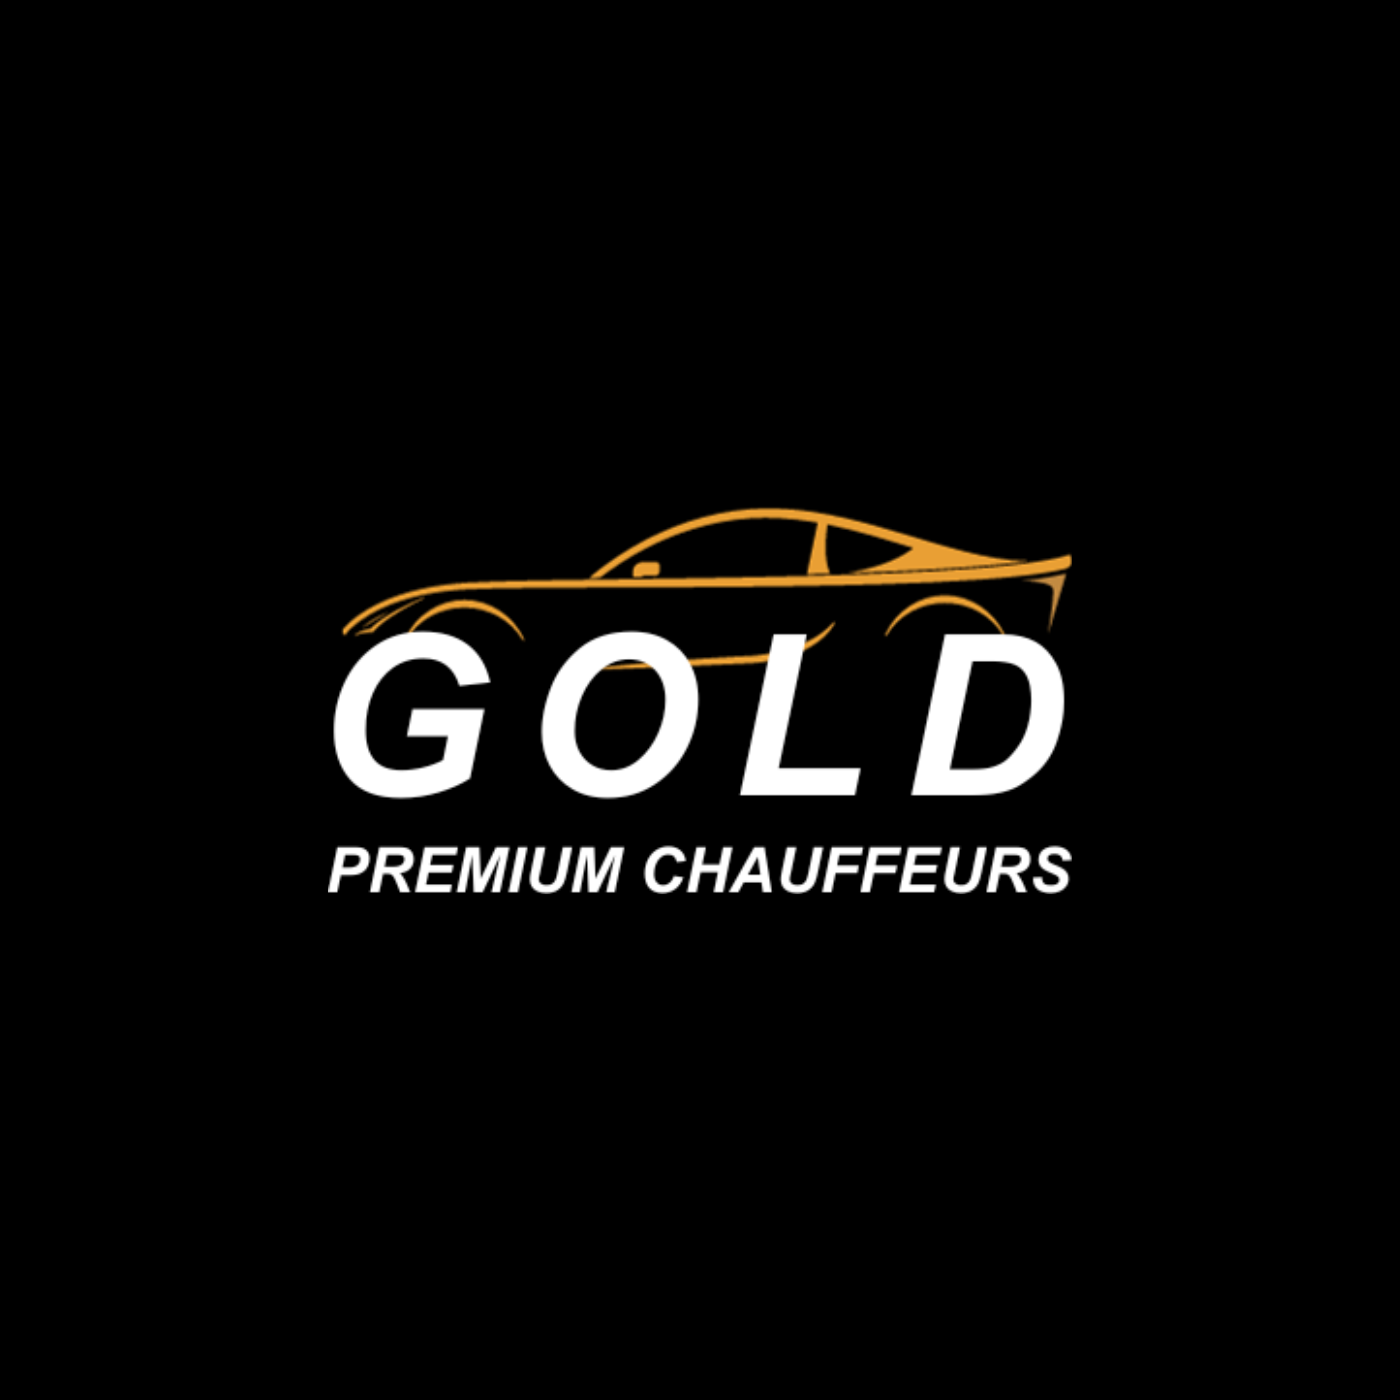 Gold Premium Chauffeurs